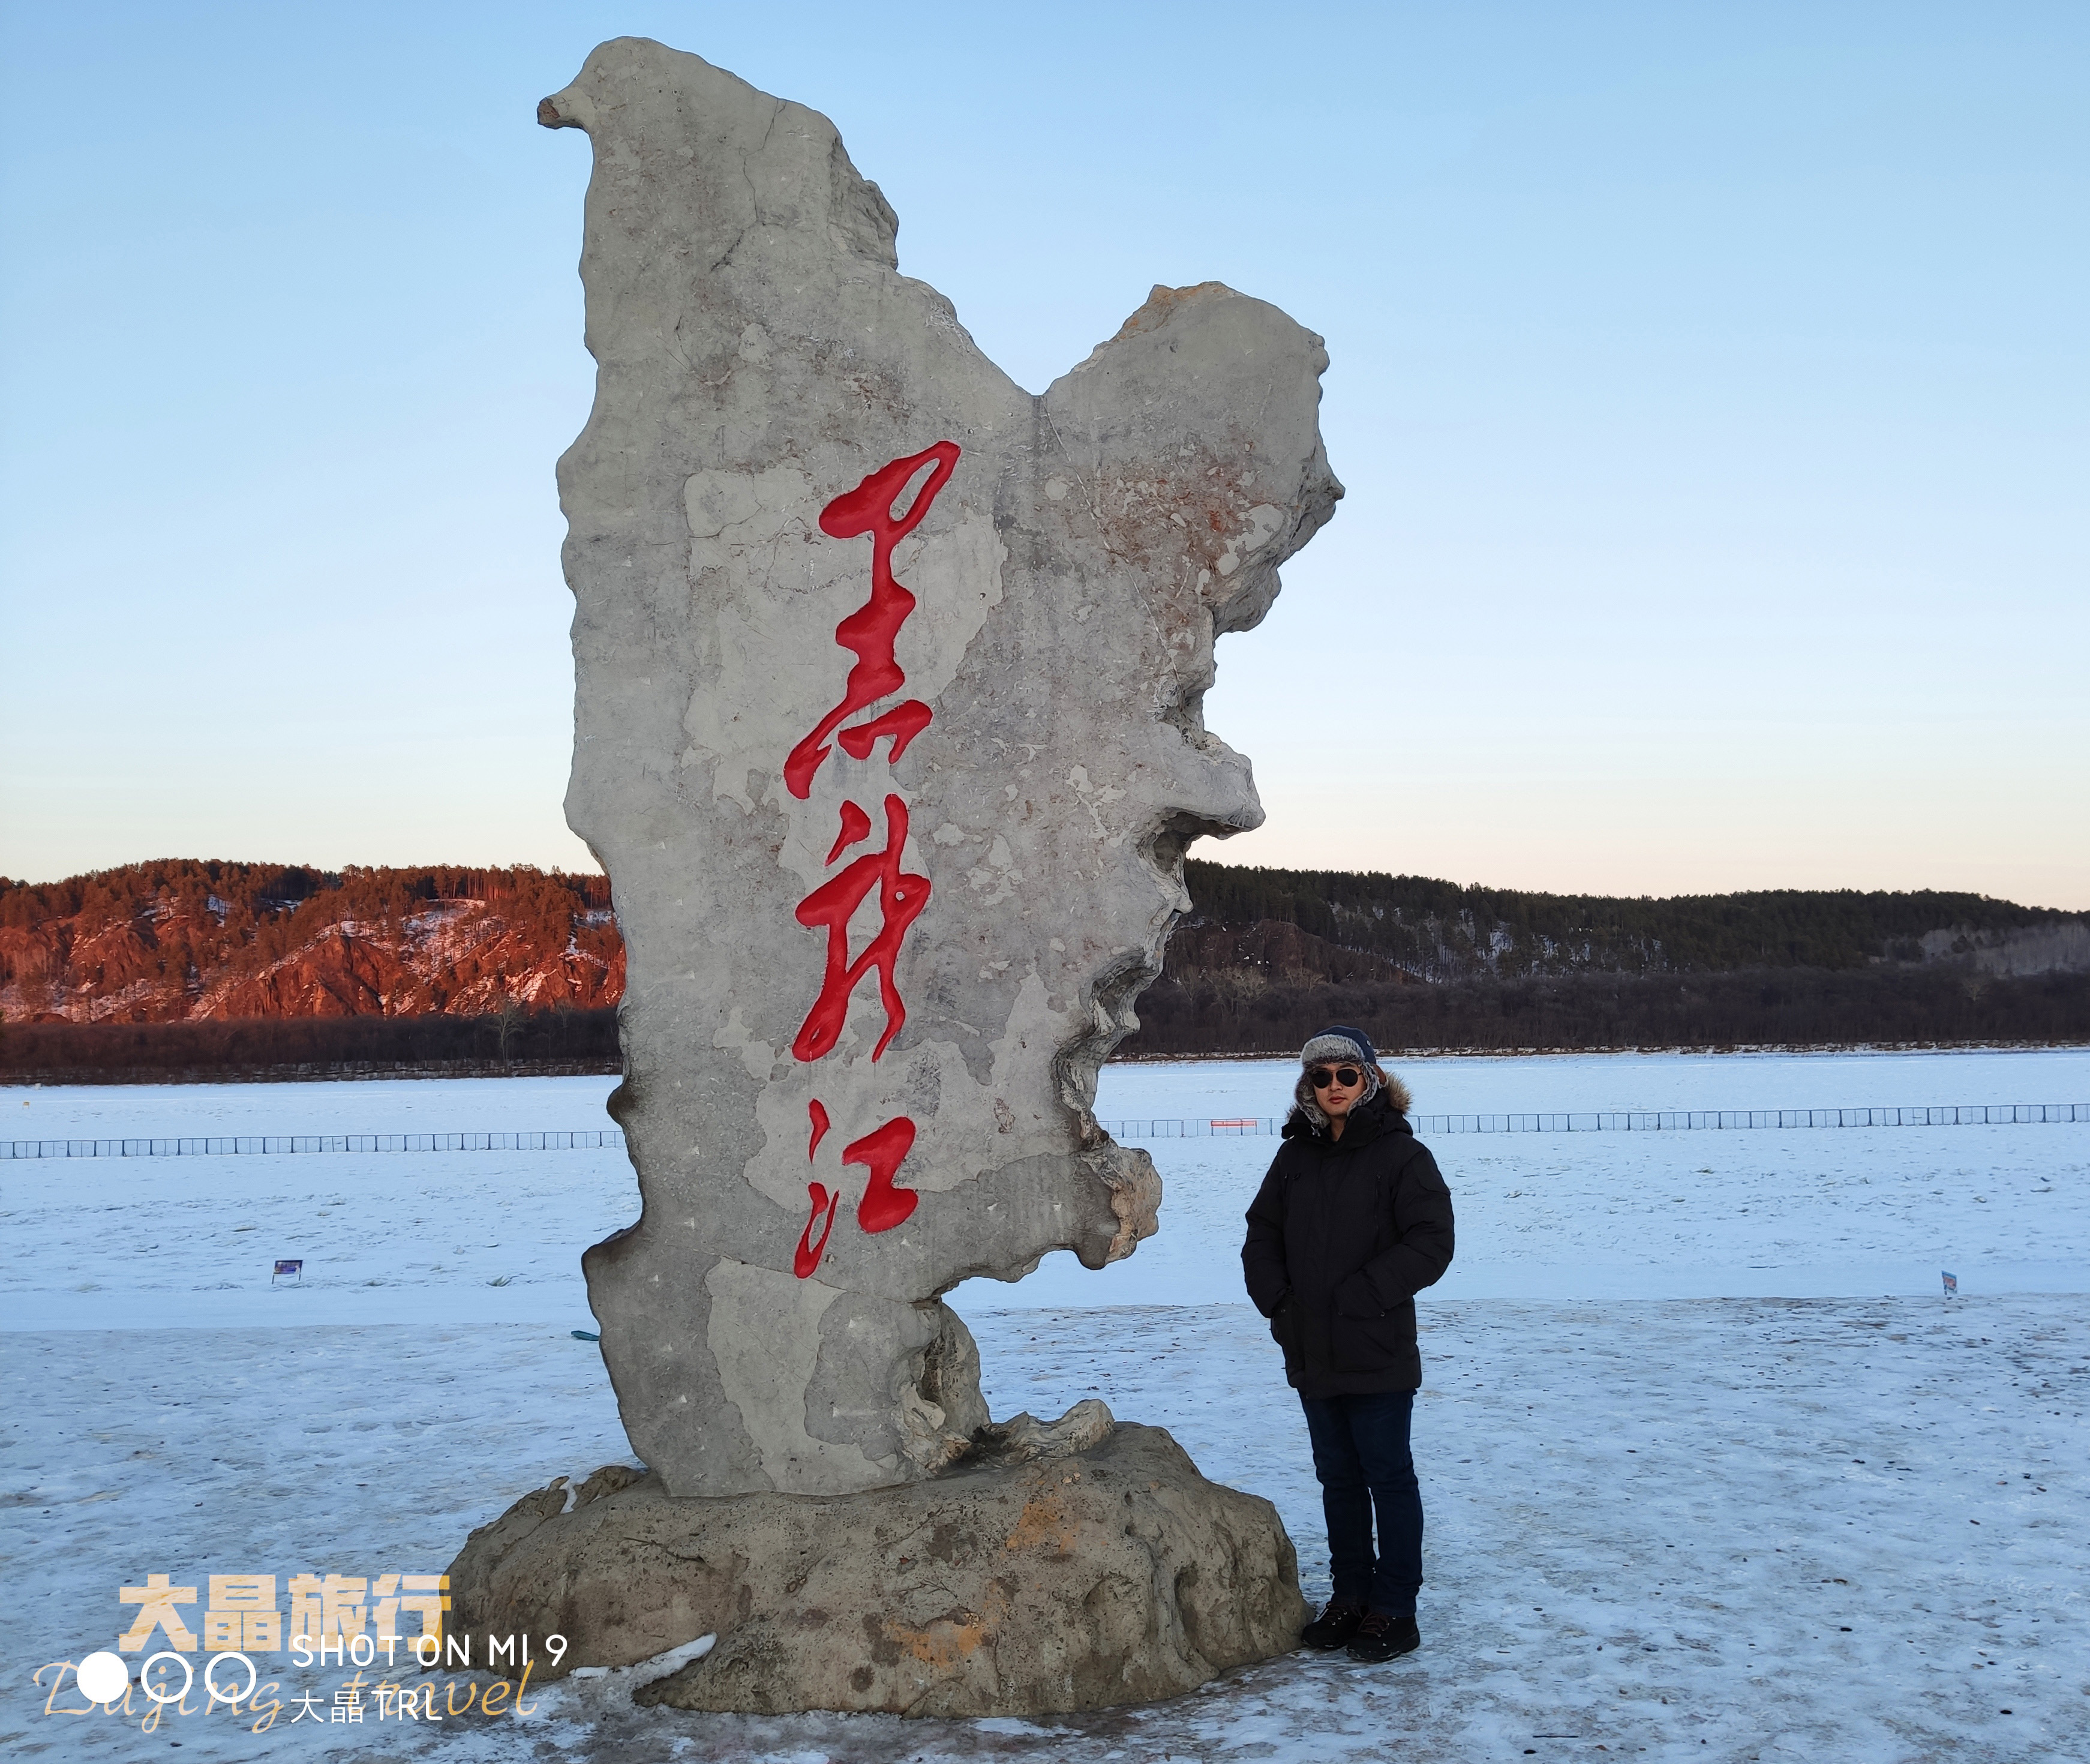 大叔冬季自驾漠河,带你看看普通镜头下的北极村和中国最北点